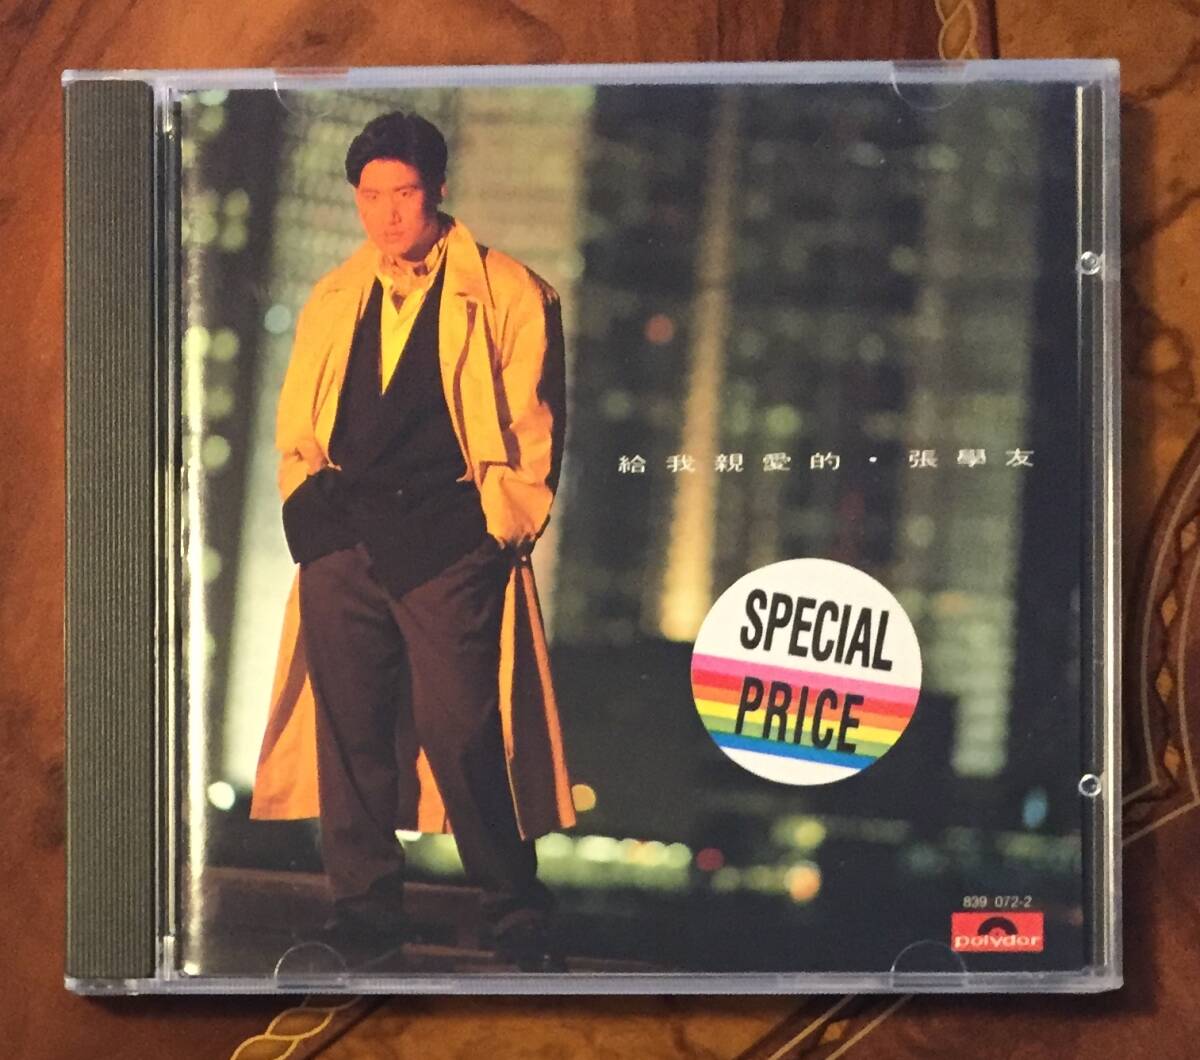 廃盤美品CD－張學友 ジャッキー・チュン Jacky Cheung・1989年「給我親愛的」Polydor 839 072-2・送料230円～_画像1